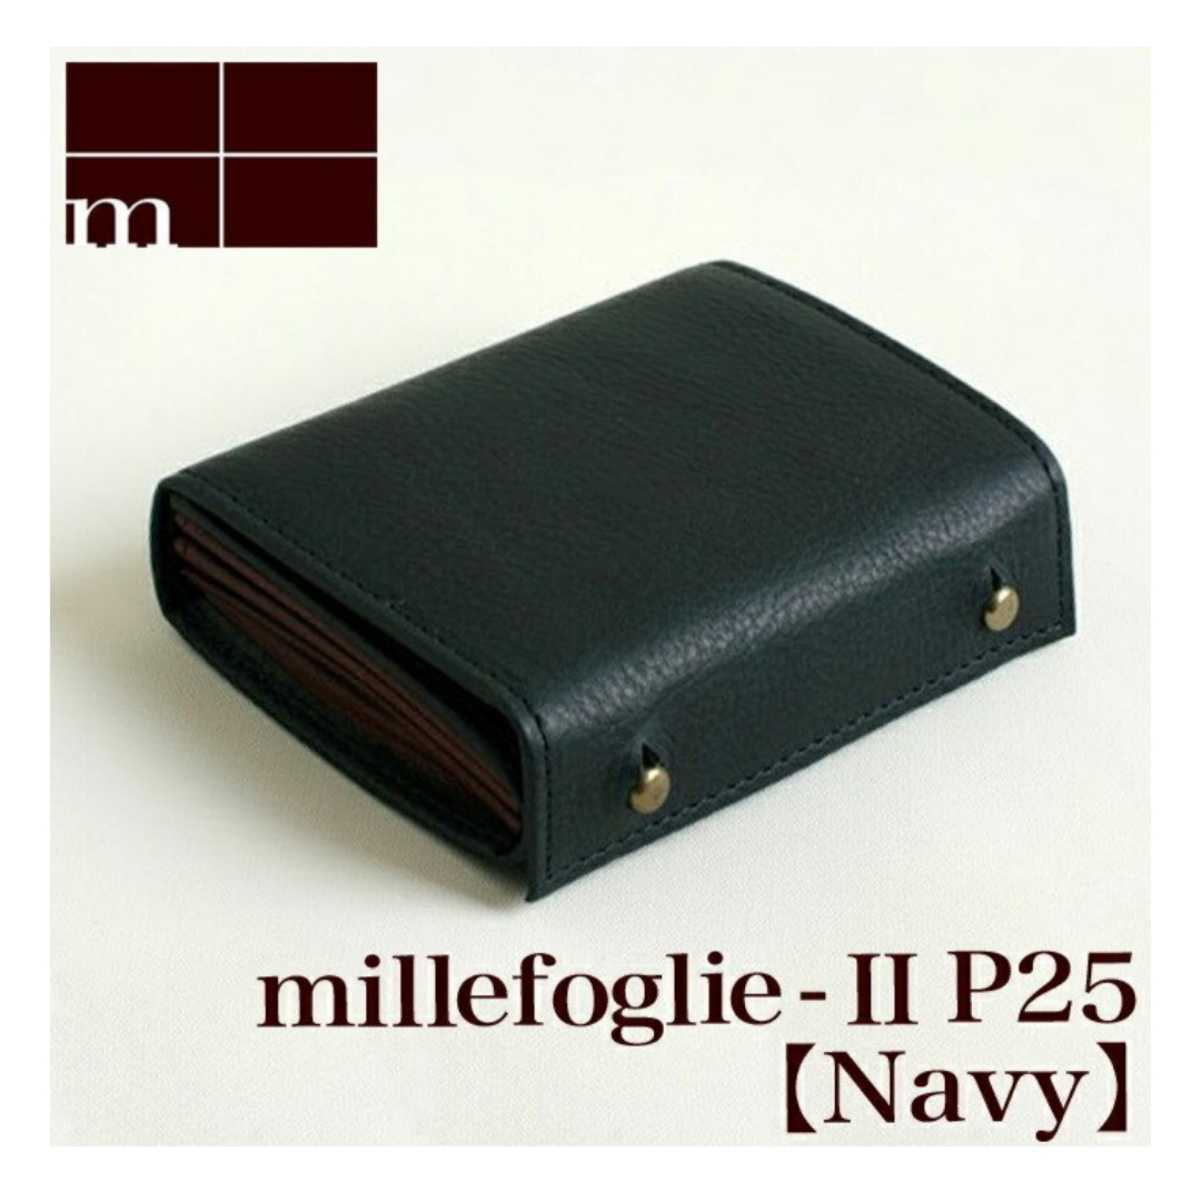 有名な高級ブランド グリージョ (M+) ミッレフォッリエ エムピウ 2P25 小物 財布 新品未使用品 Ninki Shinpin